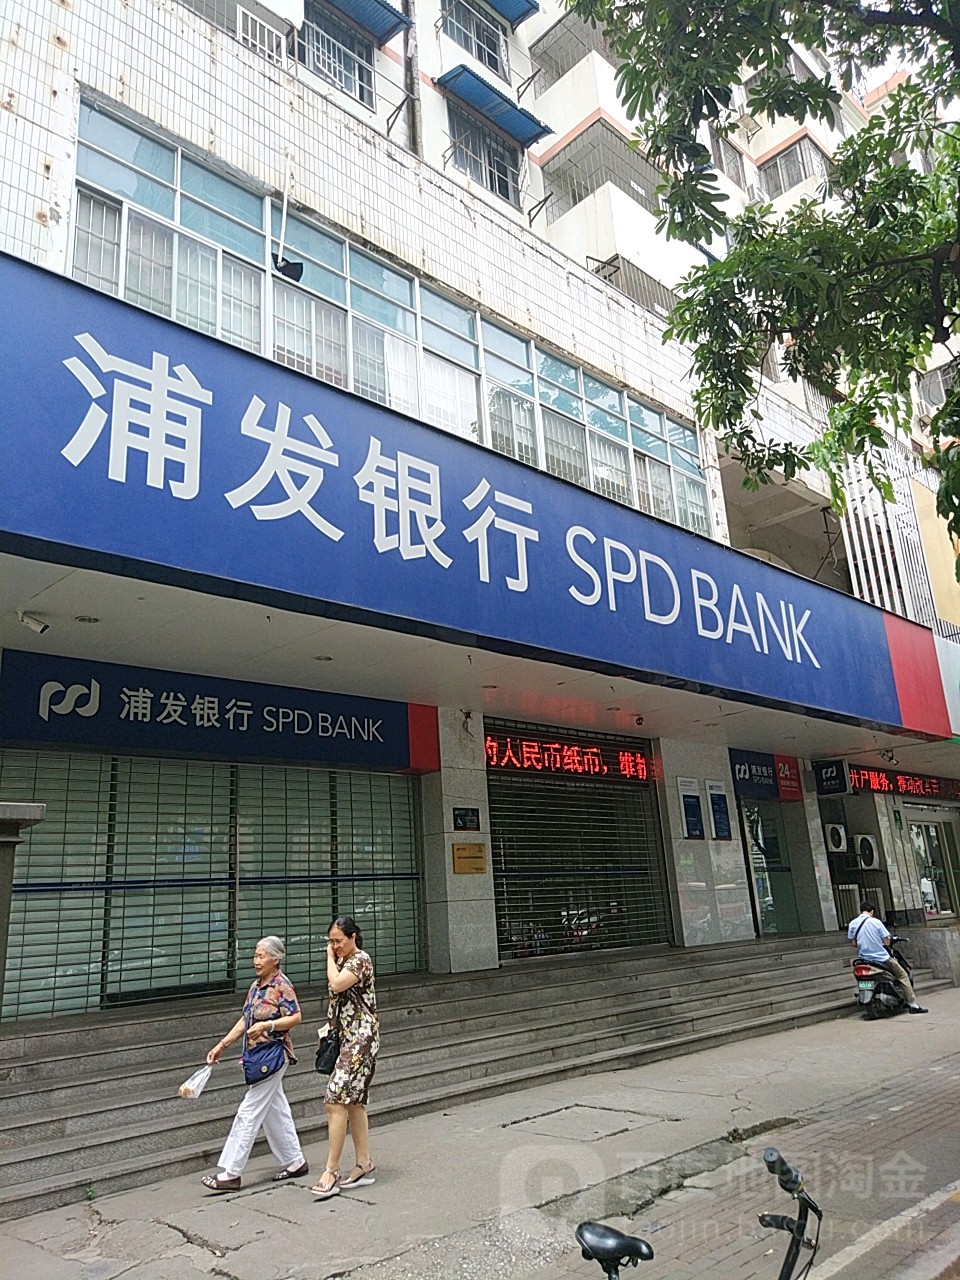 上海浦東發展銀行(桃源支行)